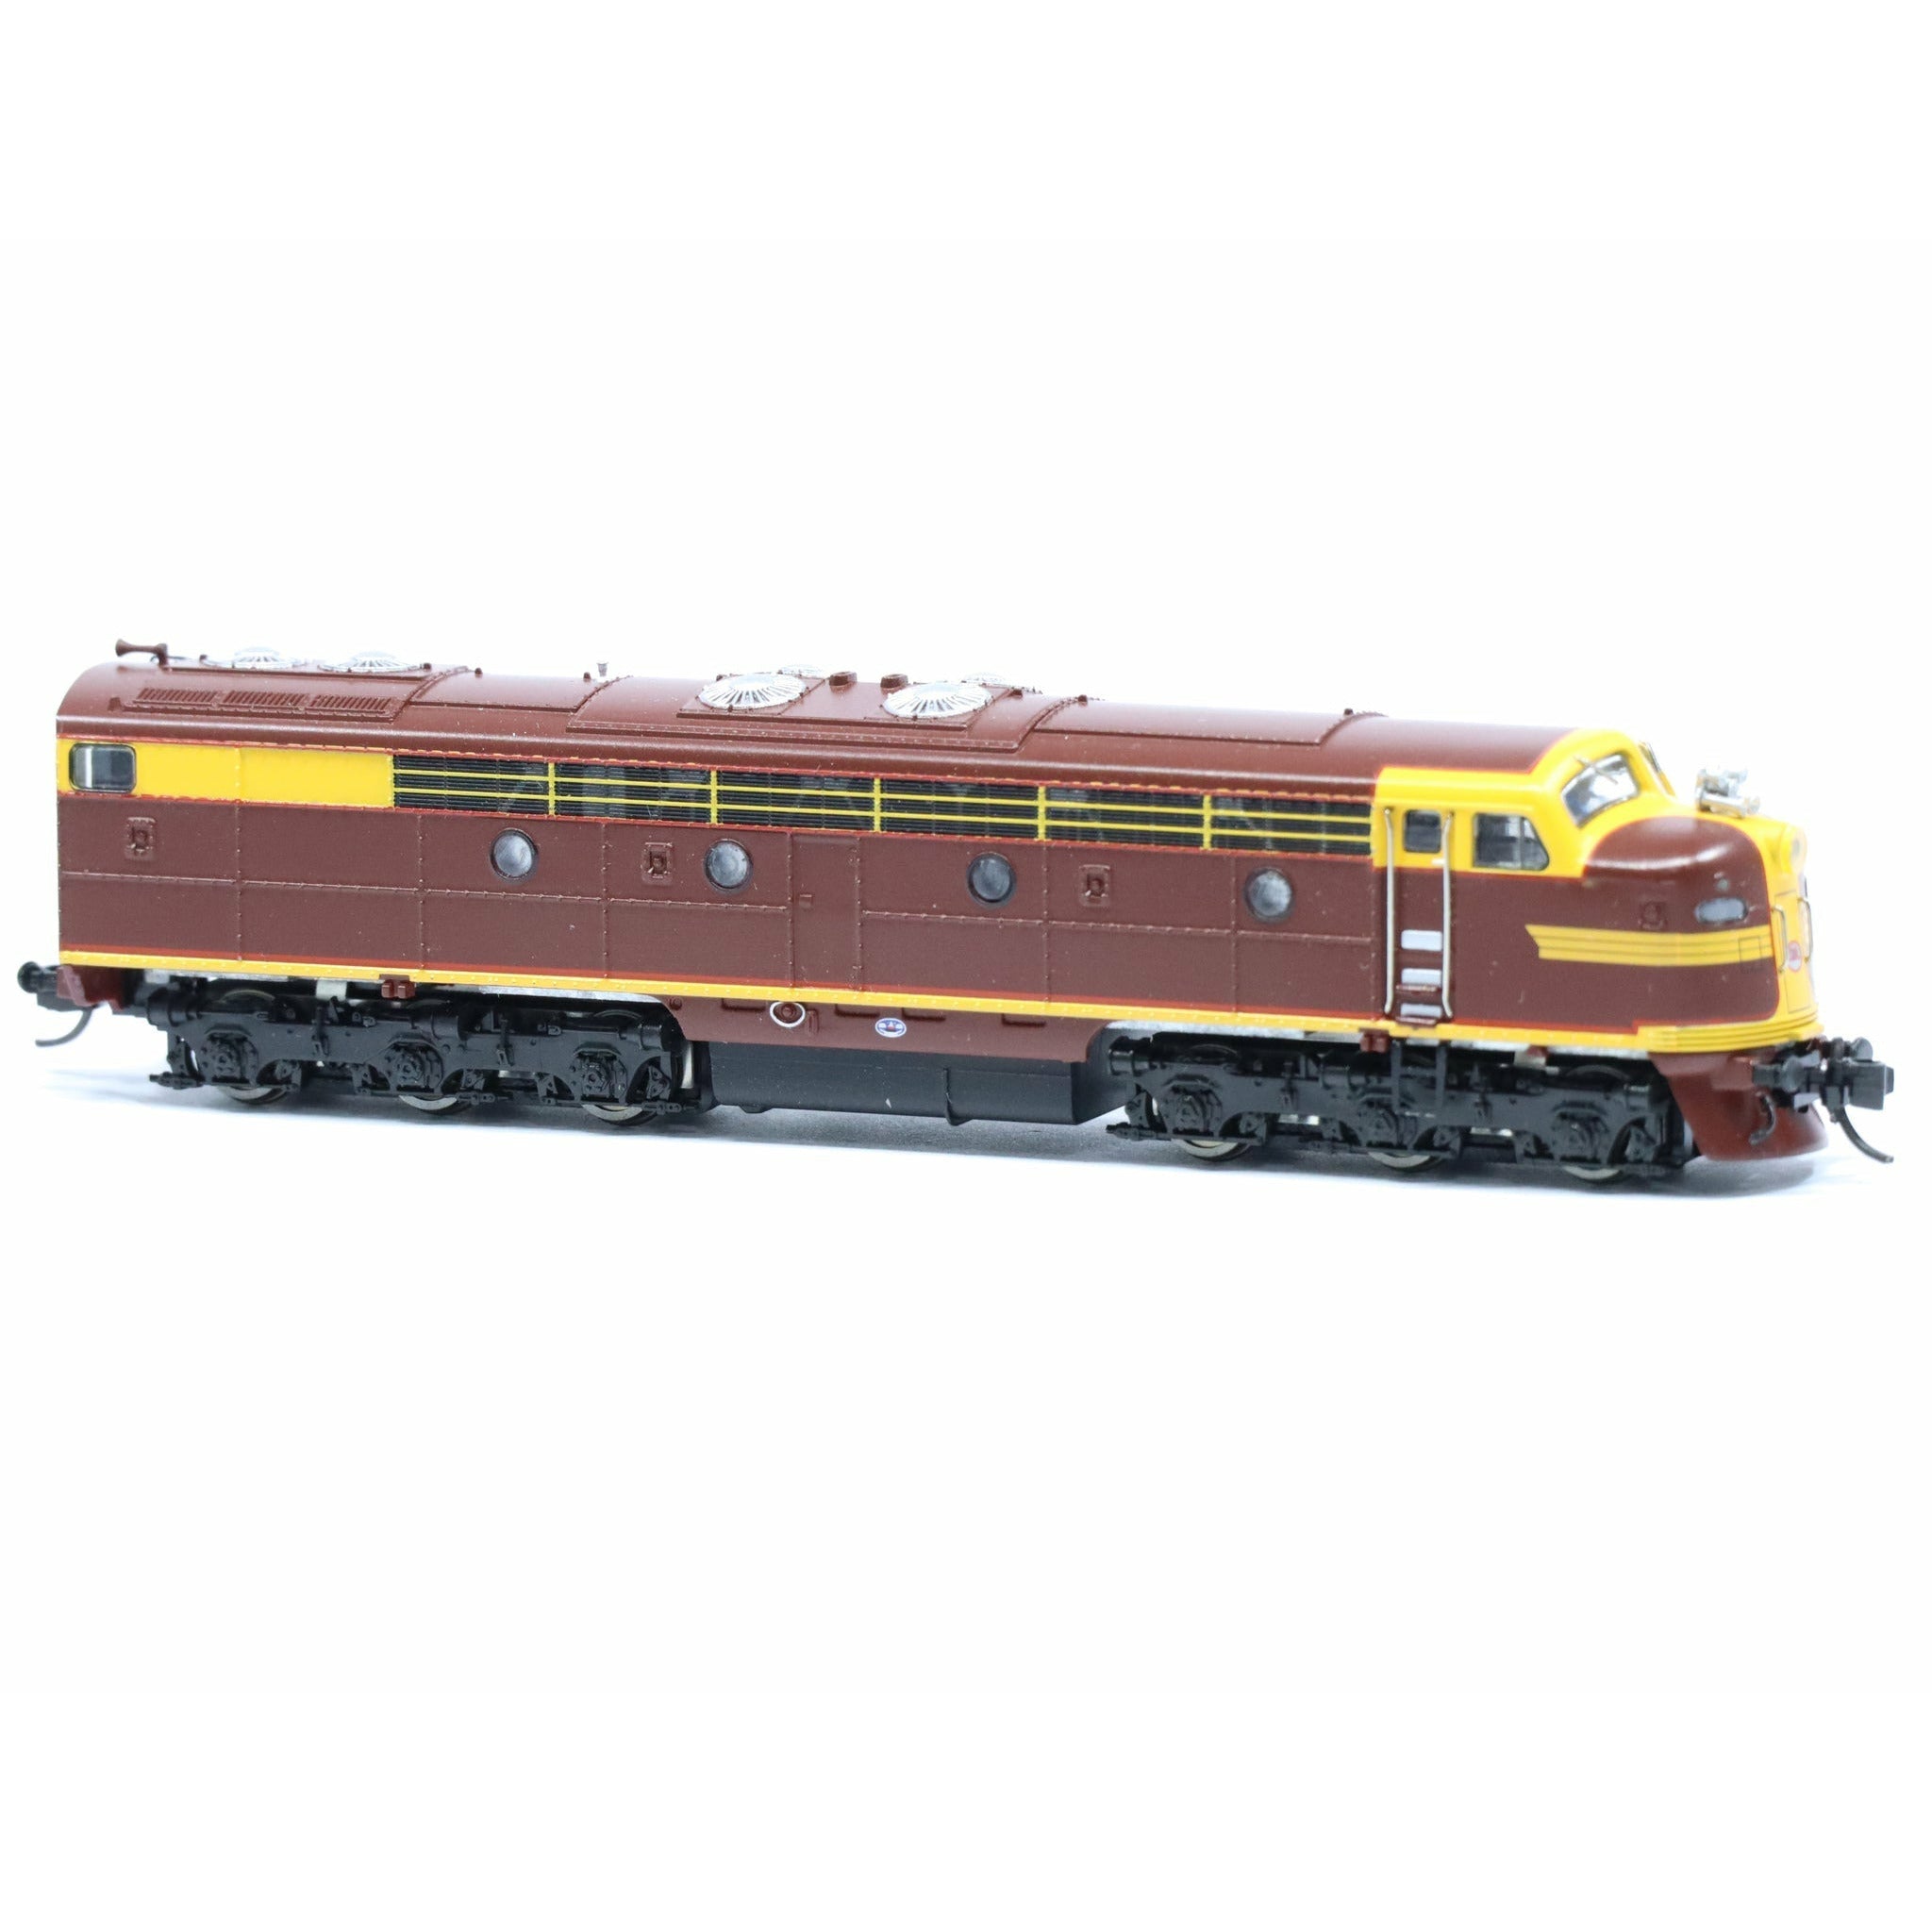 Mn'J N Decals Victorian Railways Australia Diesel Locomotive Yellow 103 